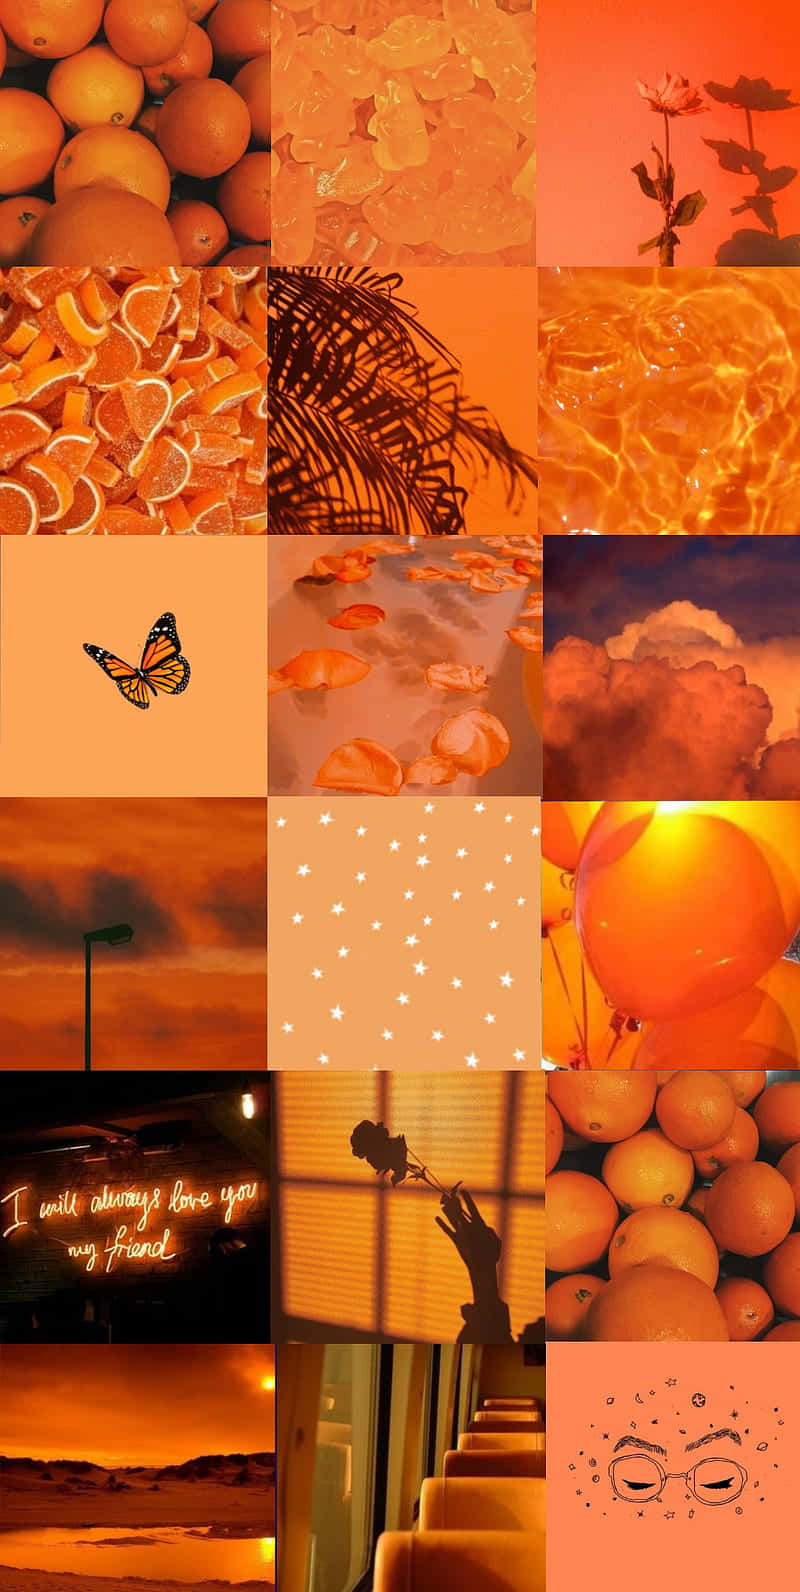 Einecollage Aus Orangefarbenen Bildern Wallpaper